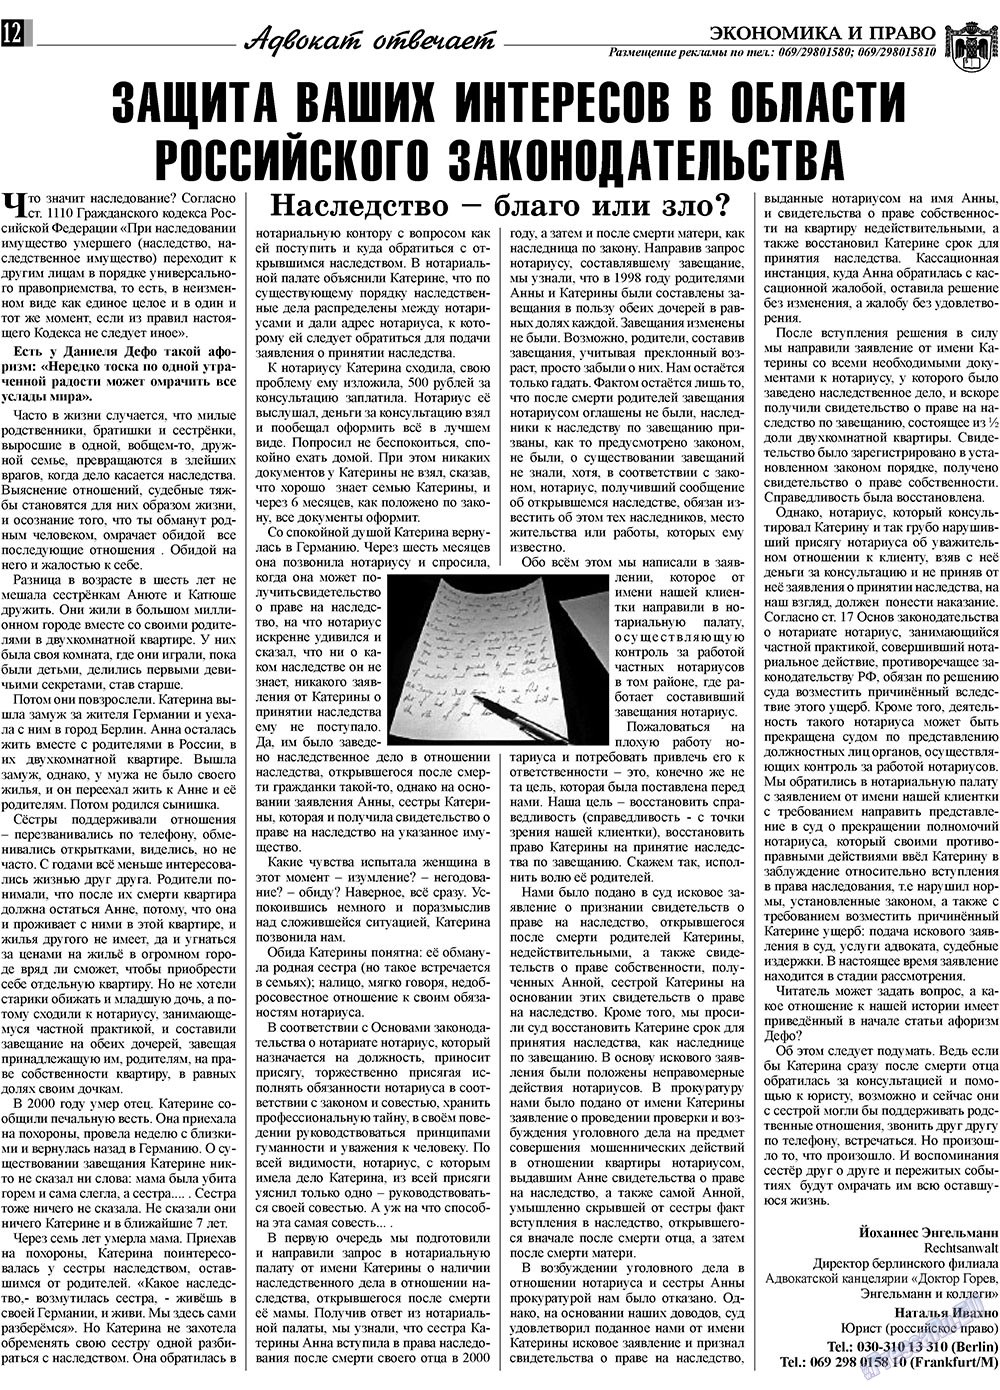 Экономика и право, газета. 2009 №5 стр.12